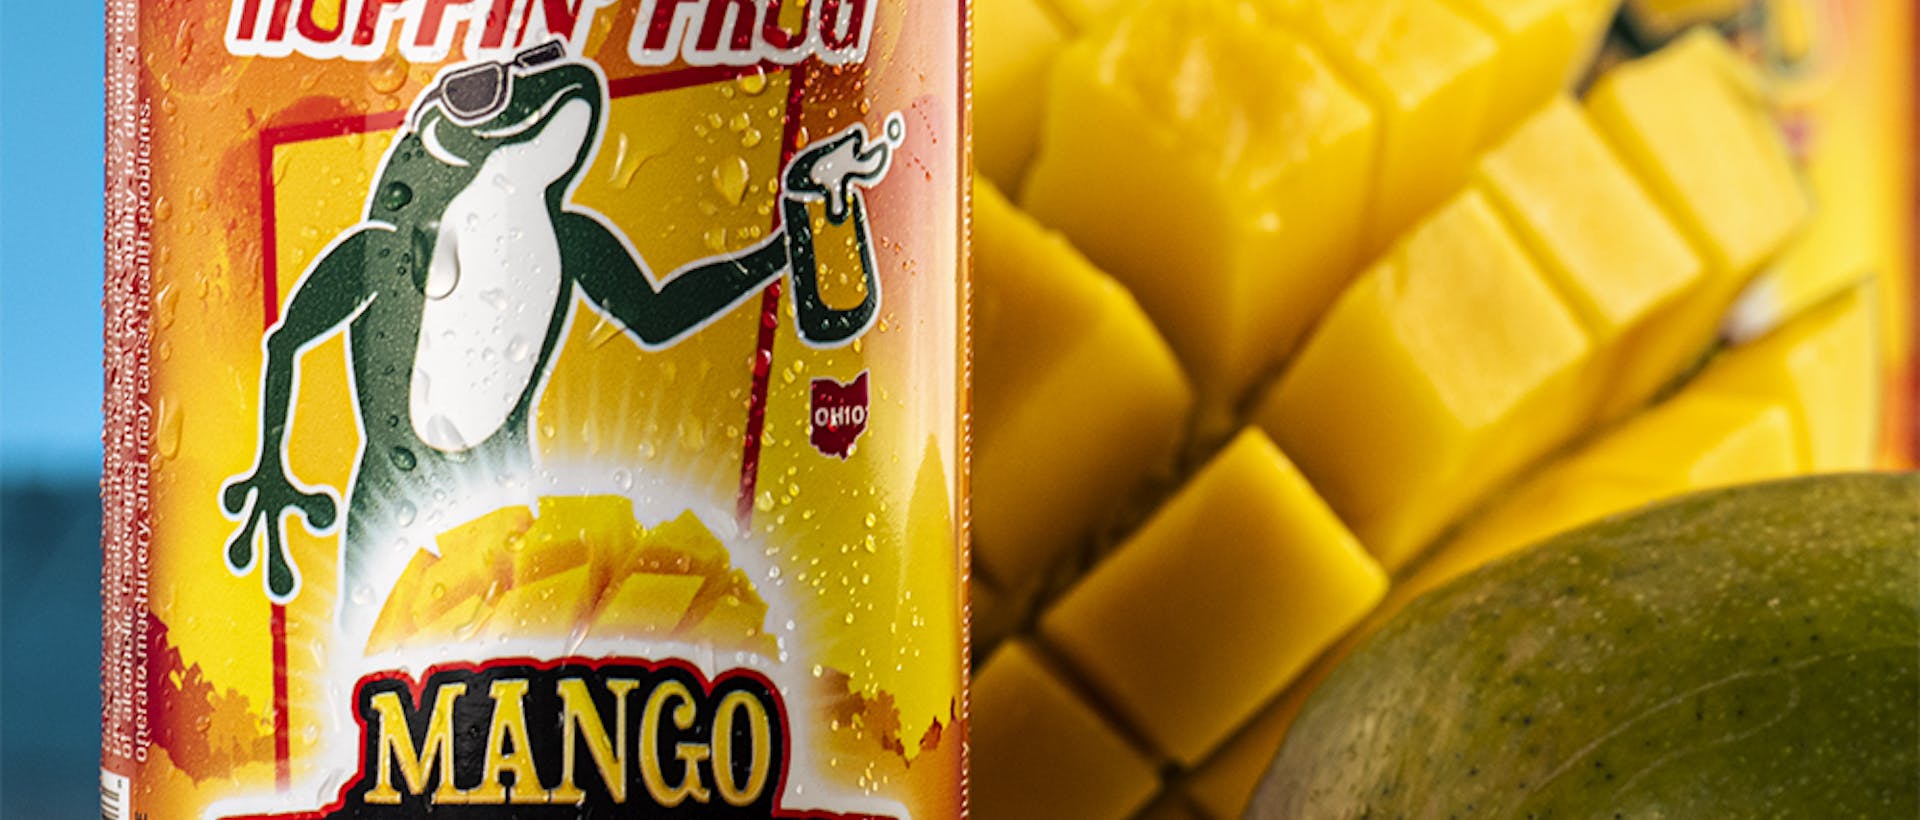 HF_Mango Turbo Shandy Citrus Ale_diced mango no glass_blue bkg_2022